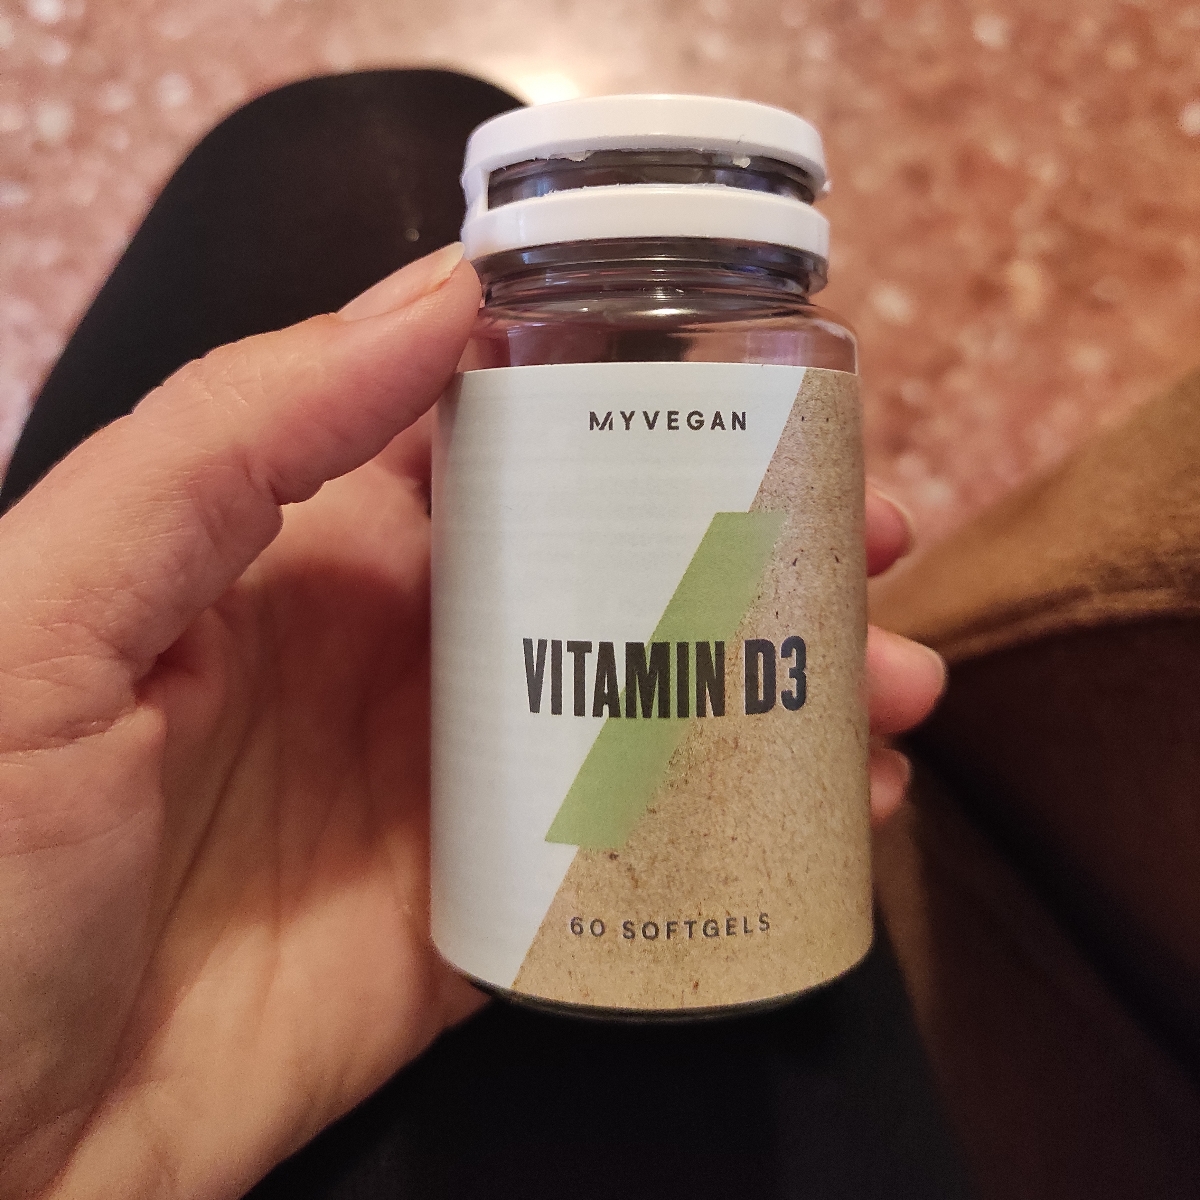 Myprotein Vitamin D3 Review | abillion